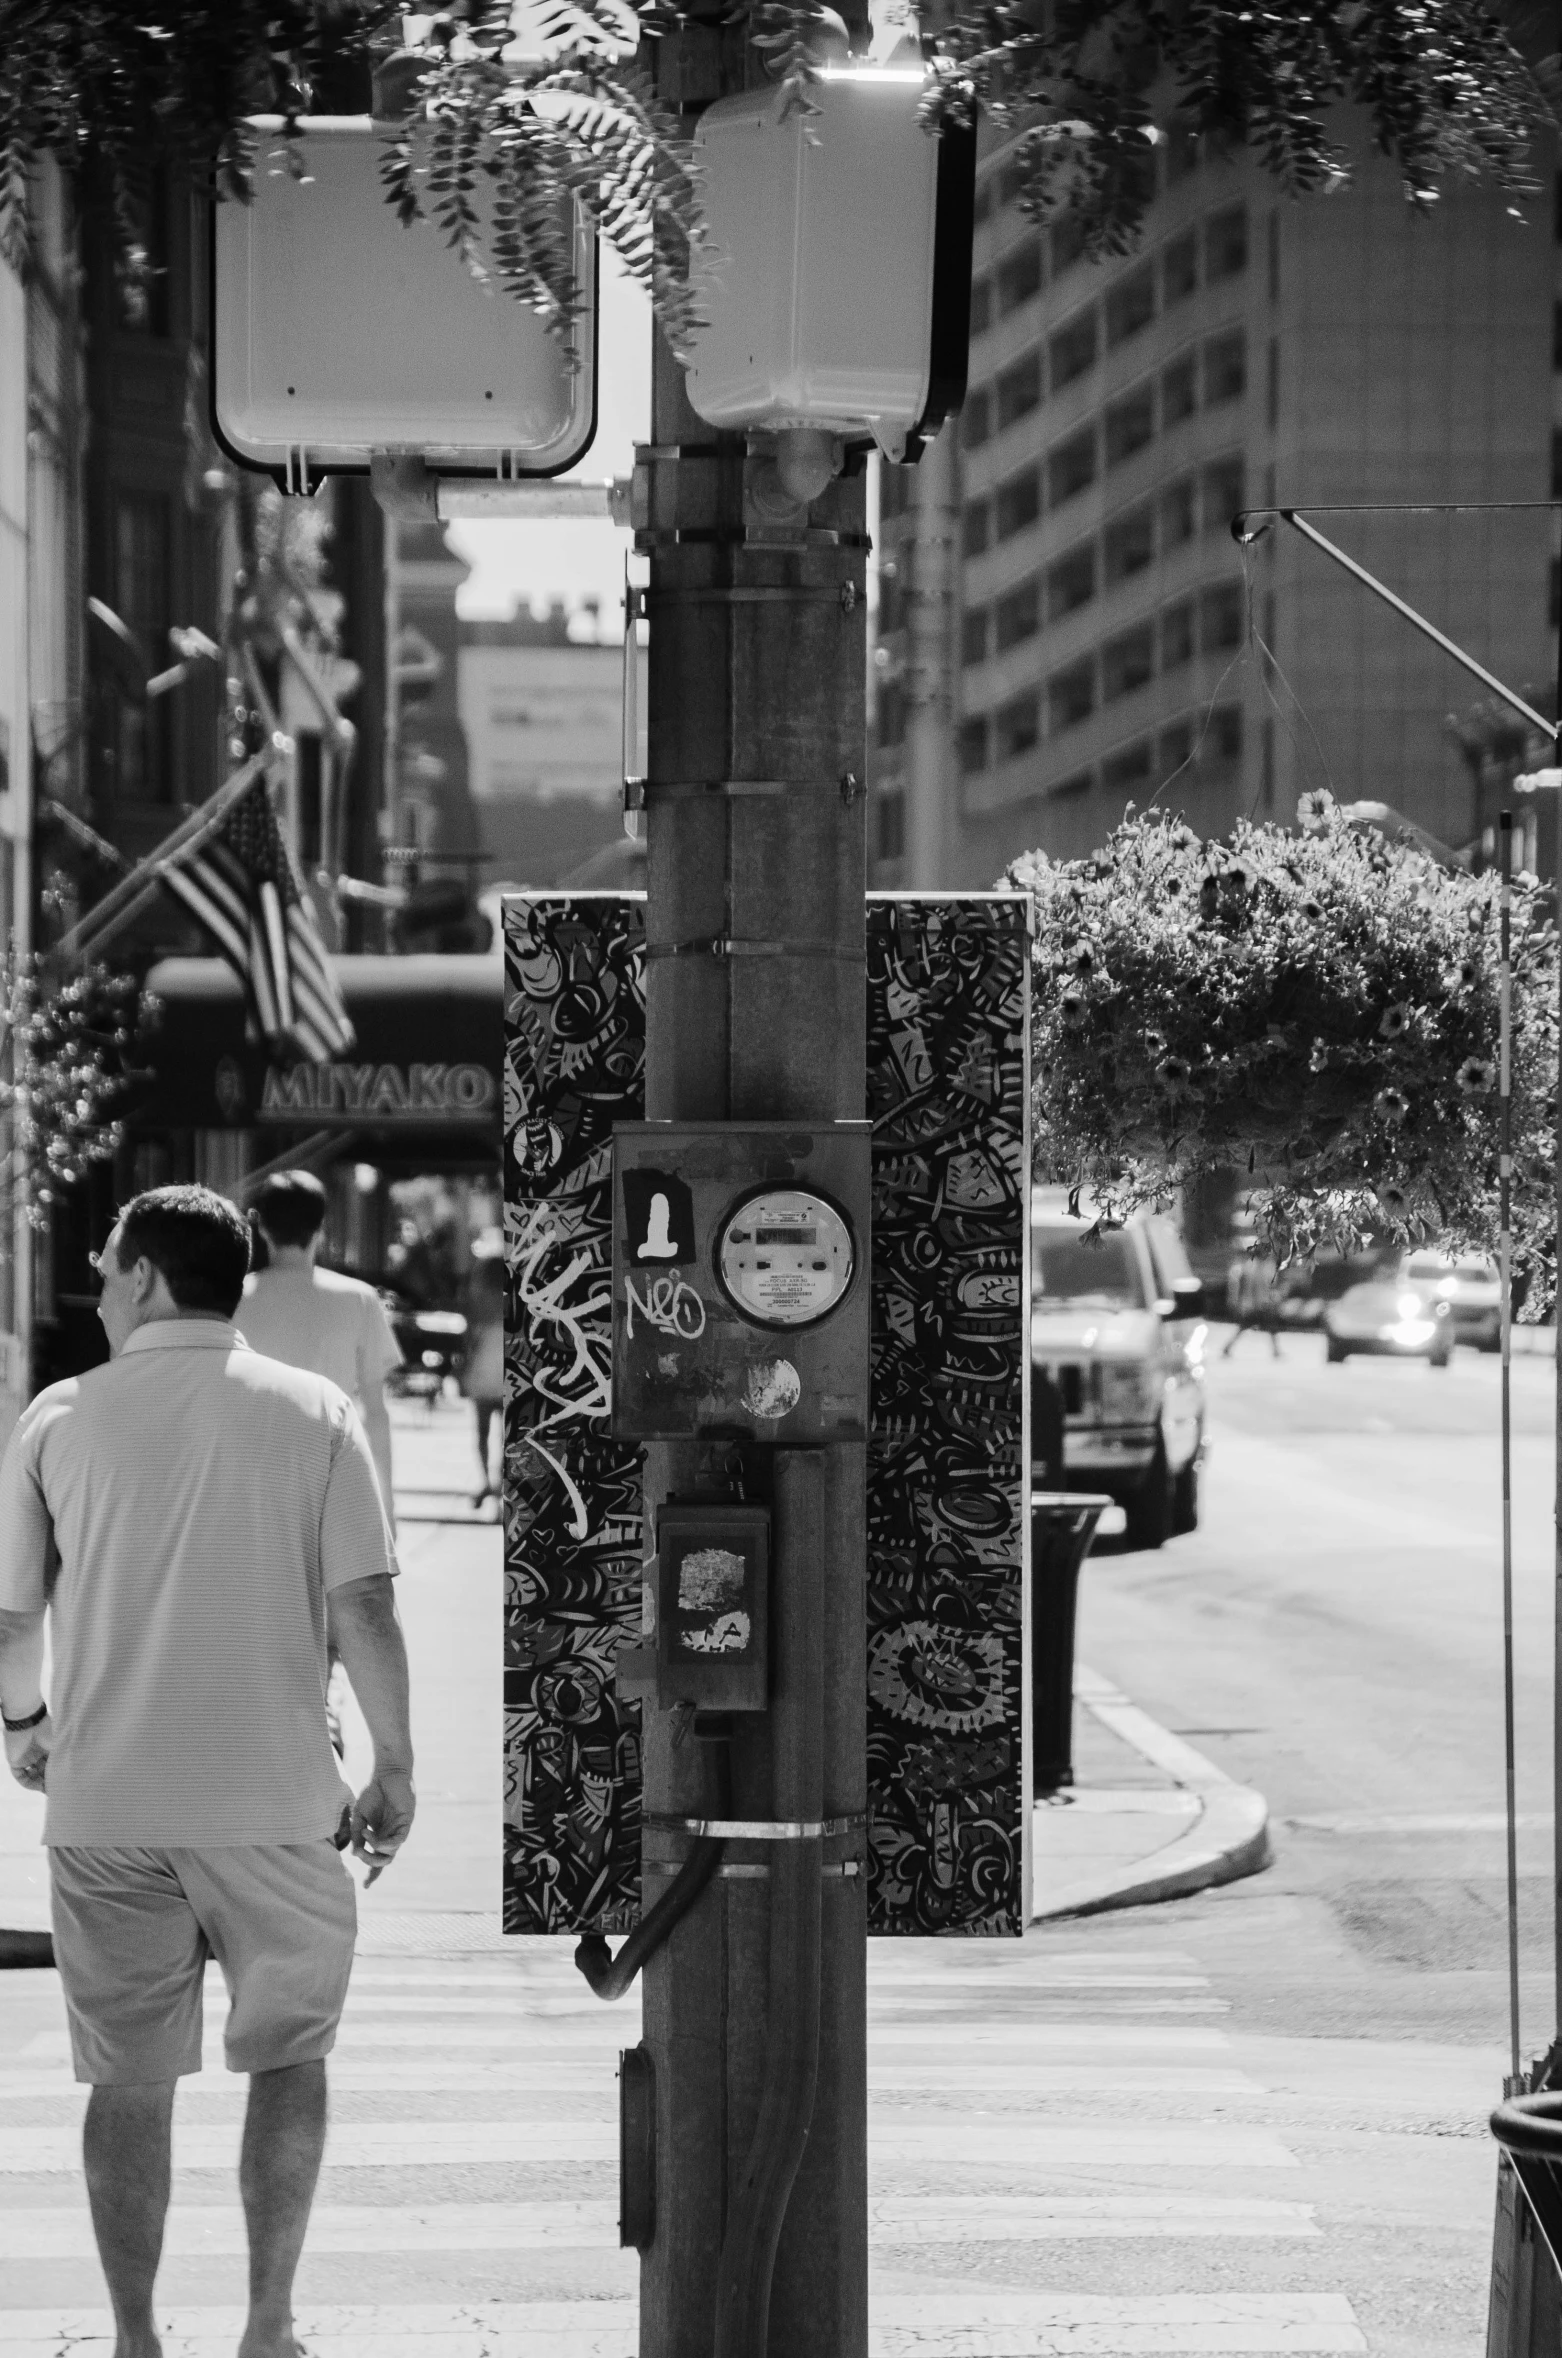 a man walking down a street under a traffic light